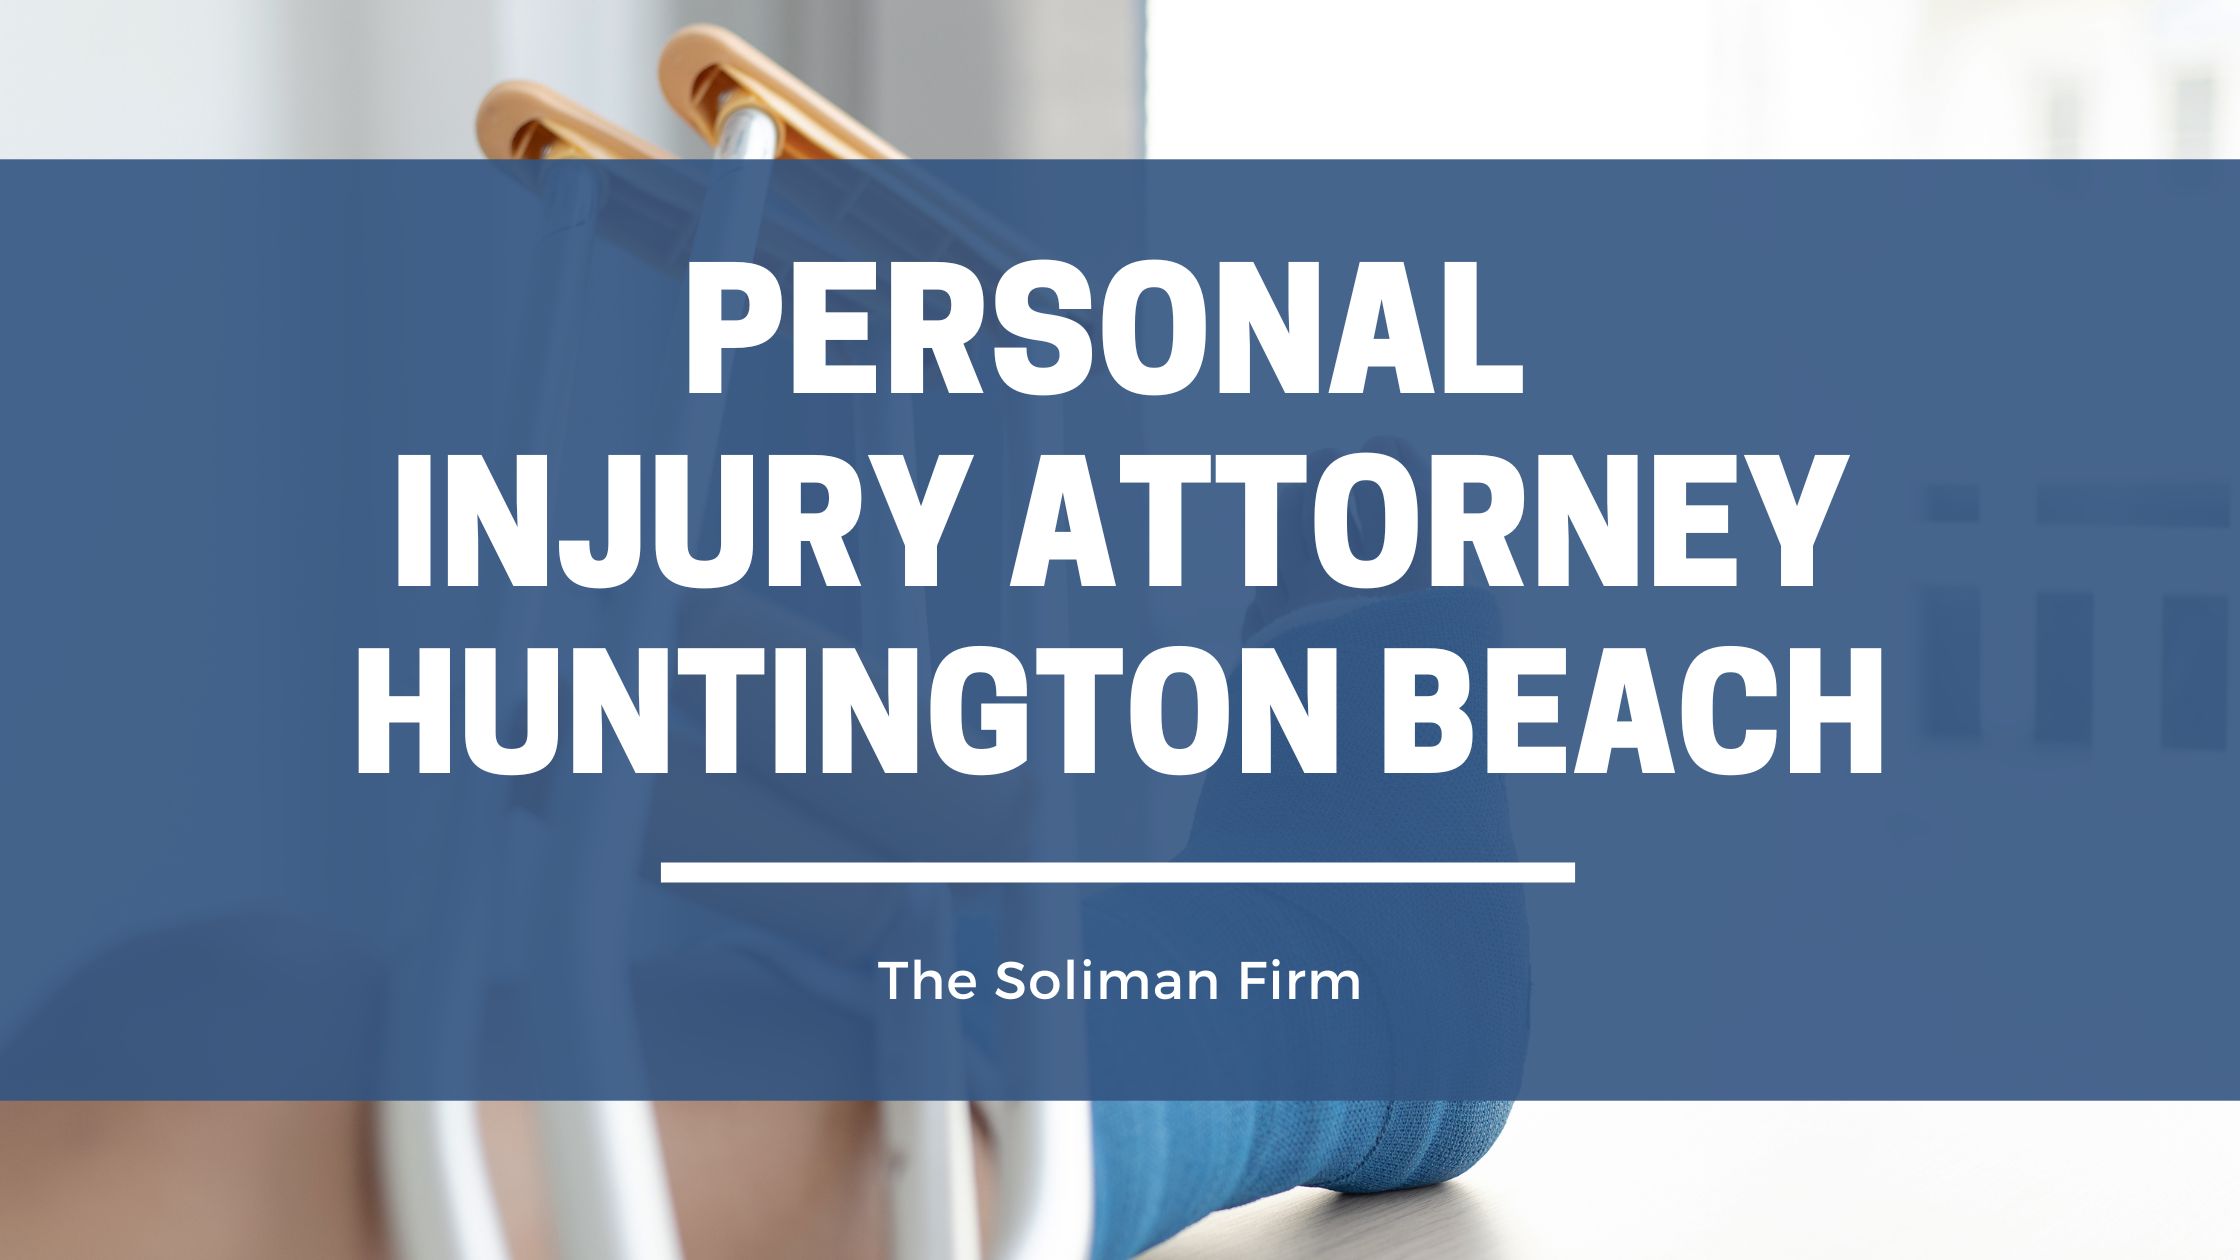 Personal Attorney Injury Huntington Beach